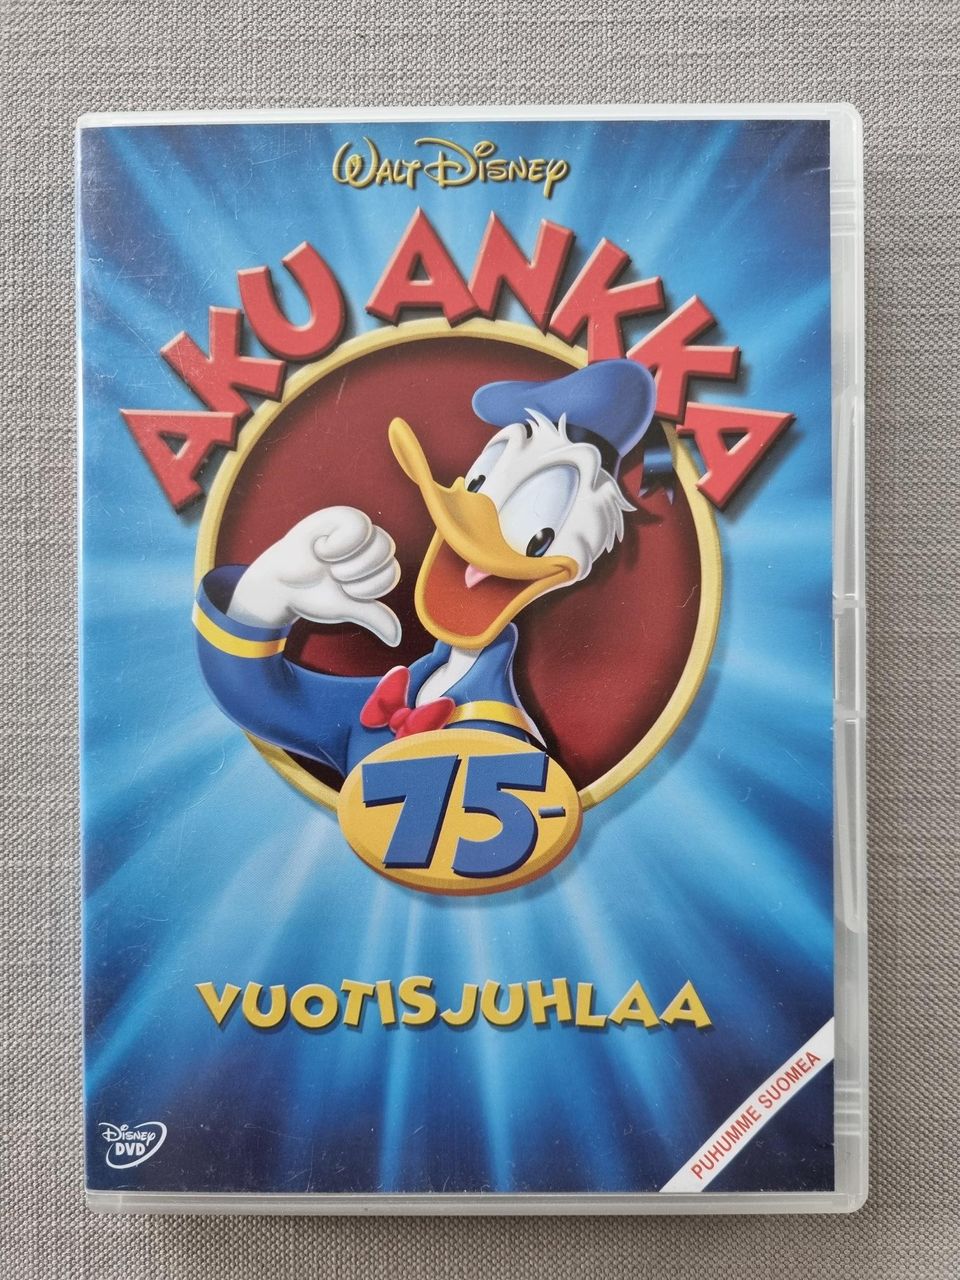 DVD Aku Ankka 75-vuotisjuhlaa